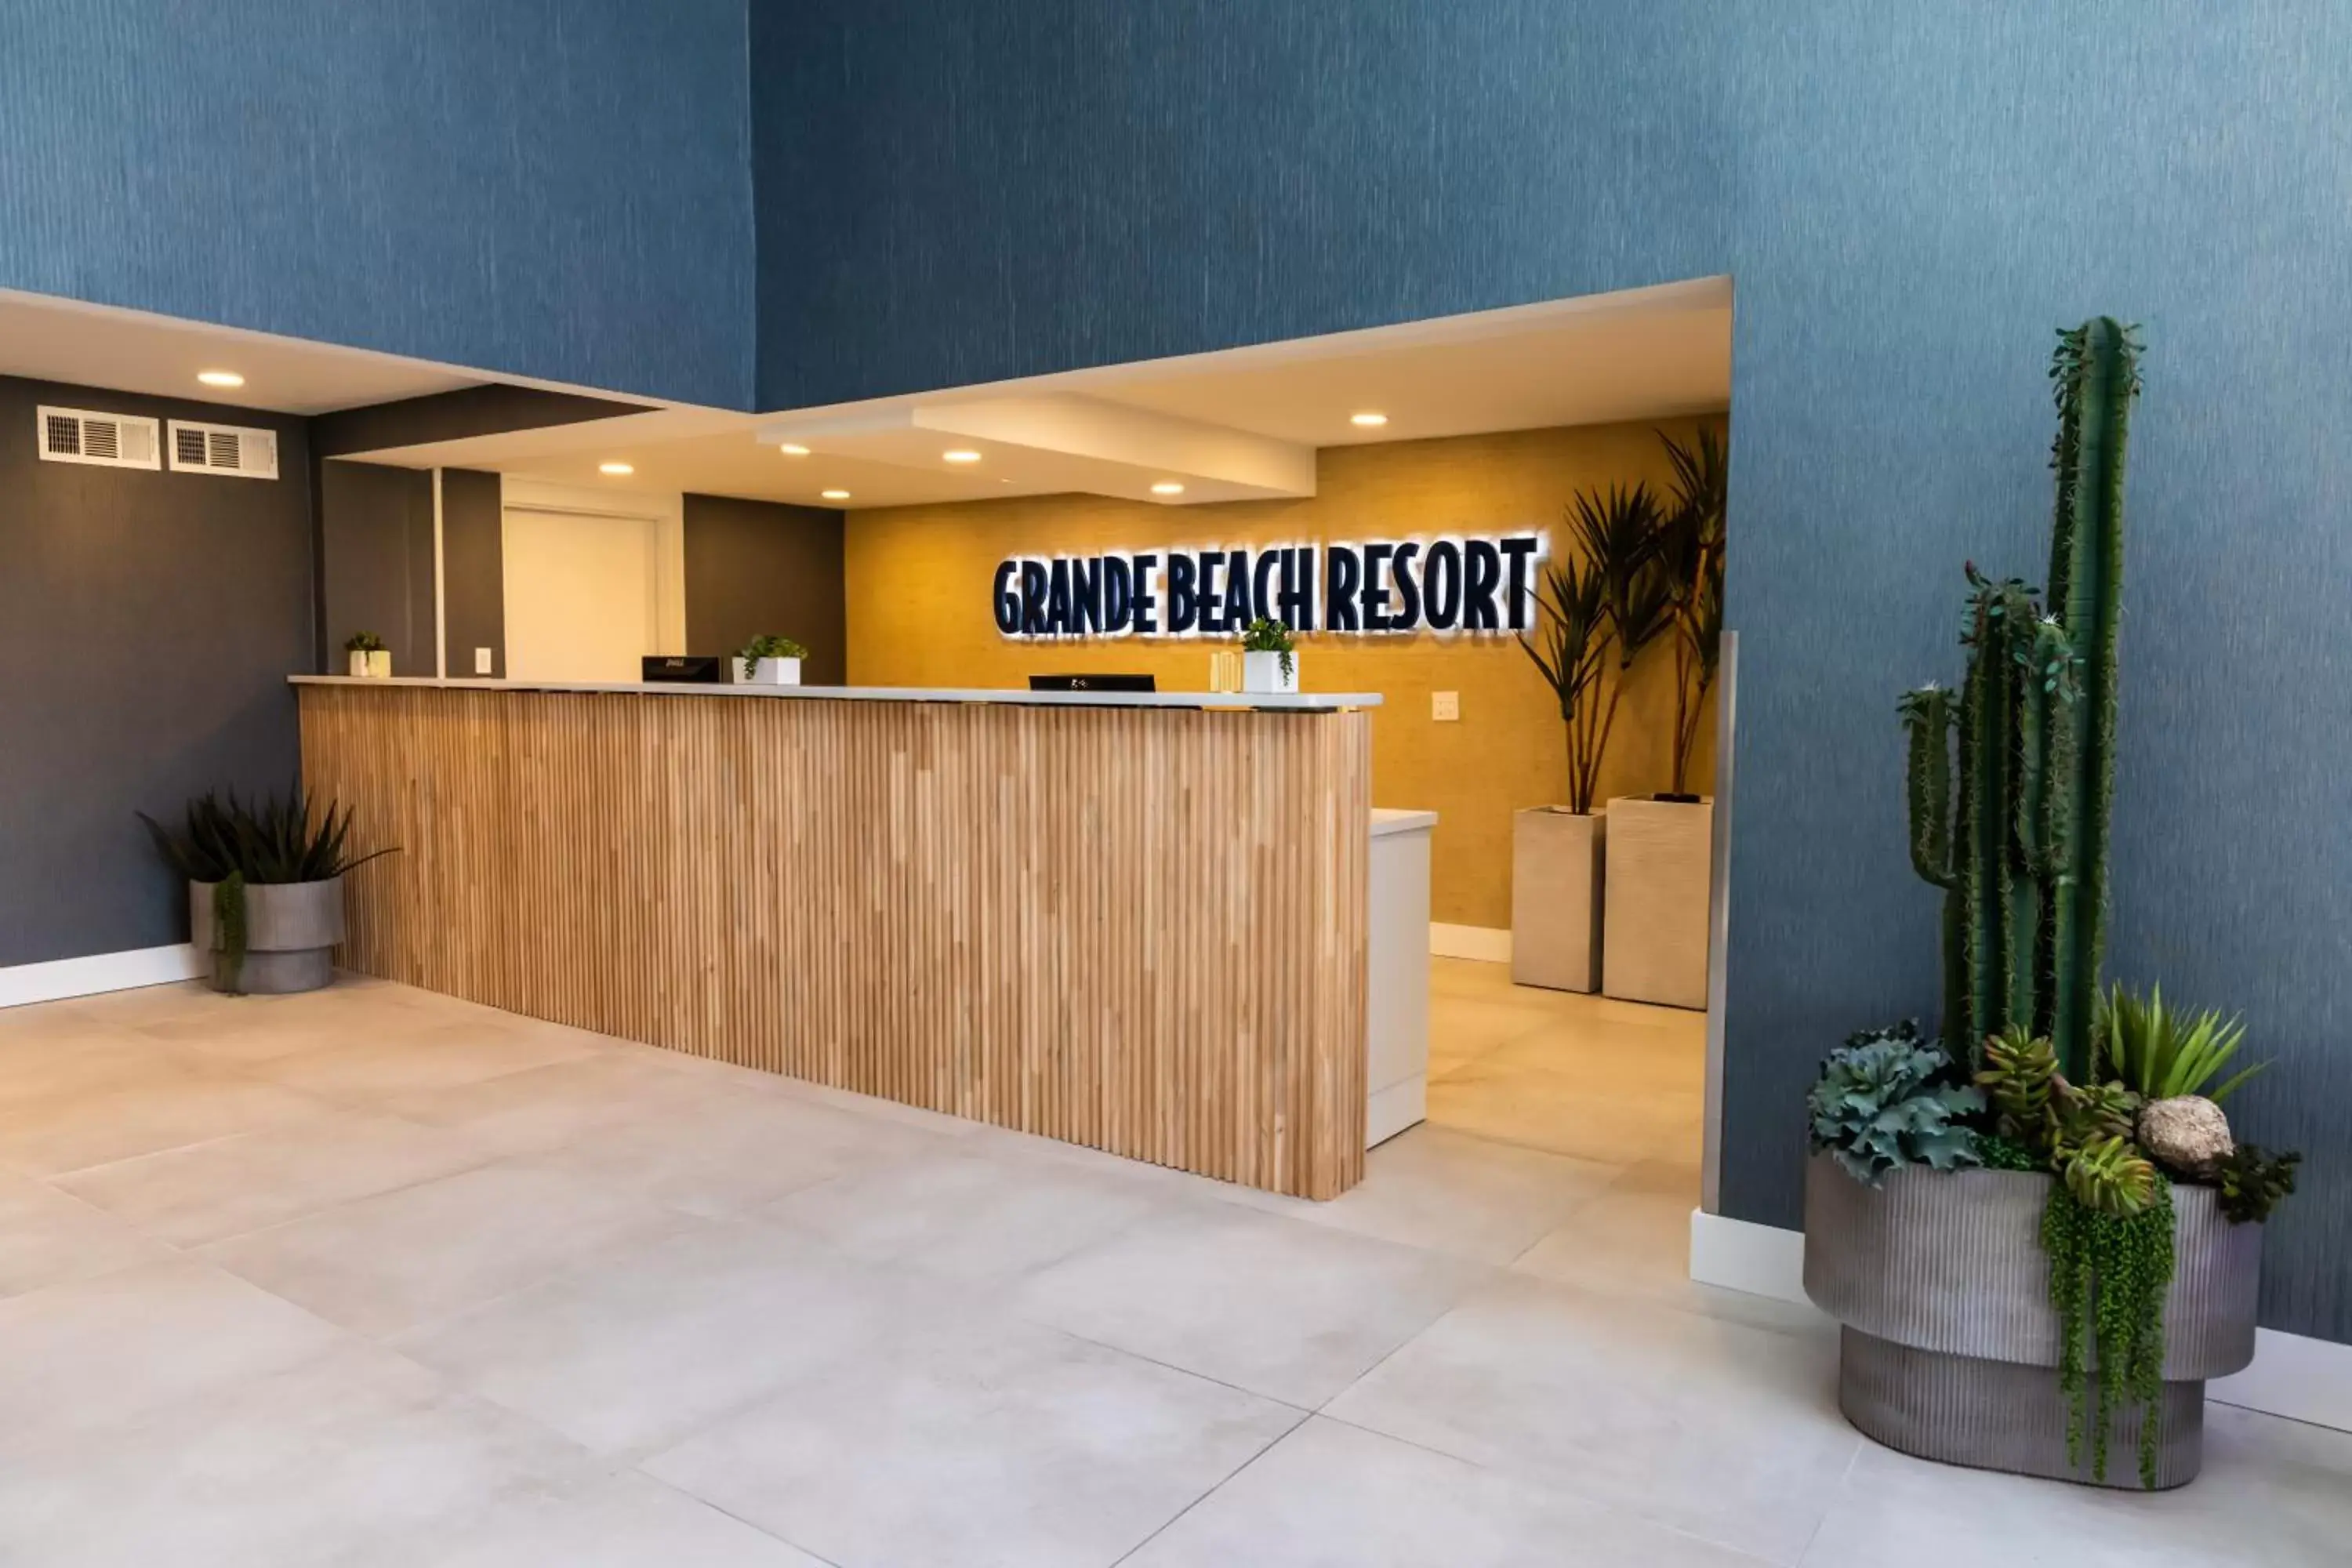 Lobby or reception, Lobby/Reception in Grande Beach